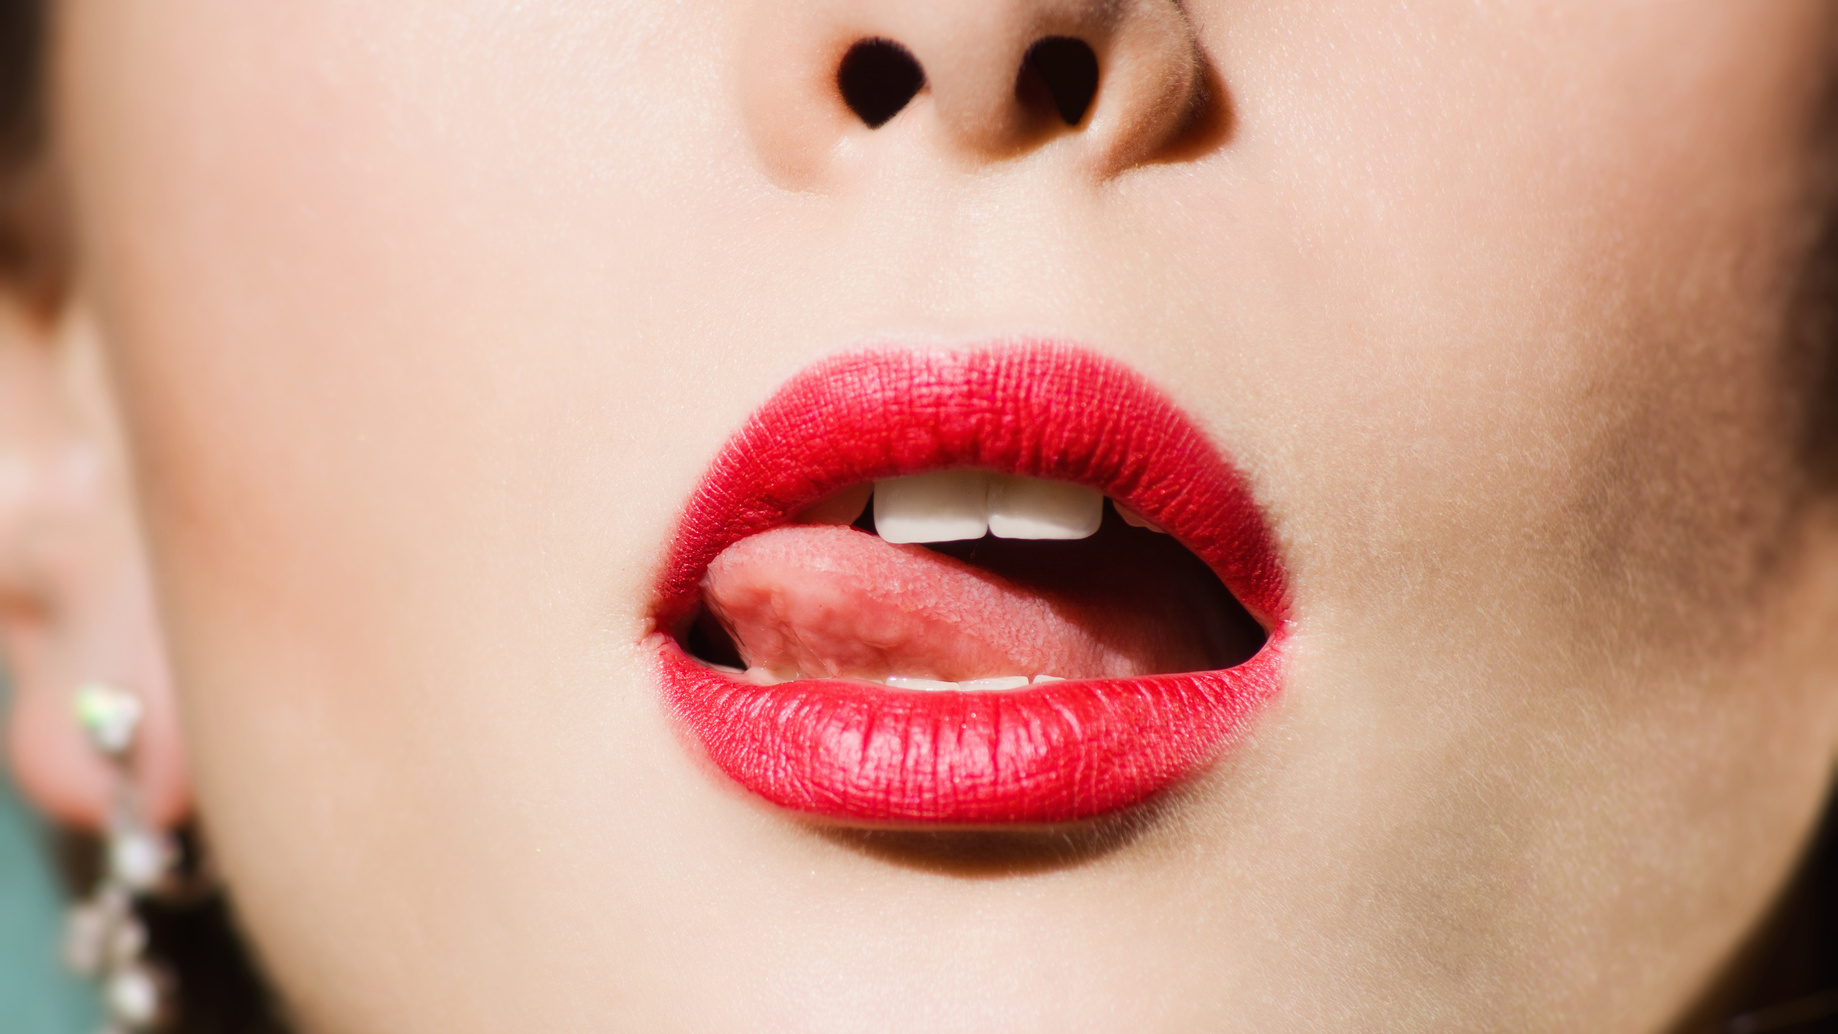 tip of tongue licks lips